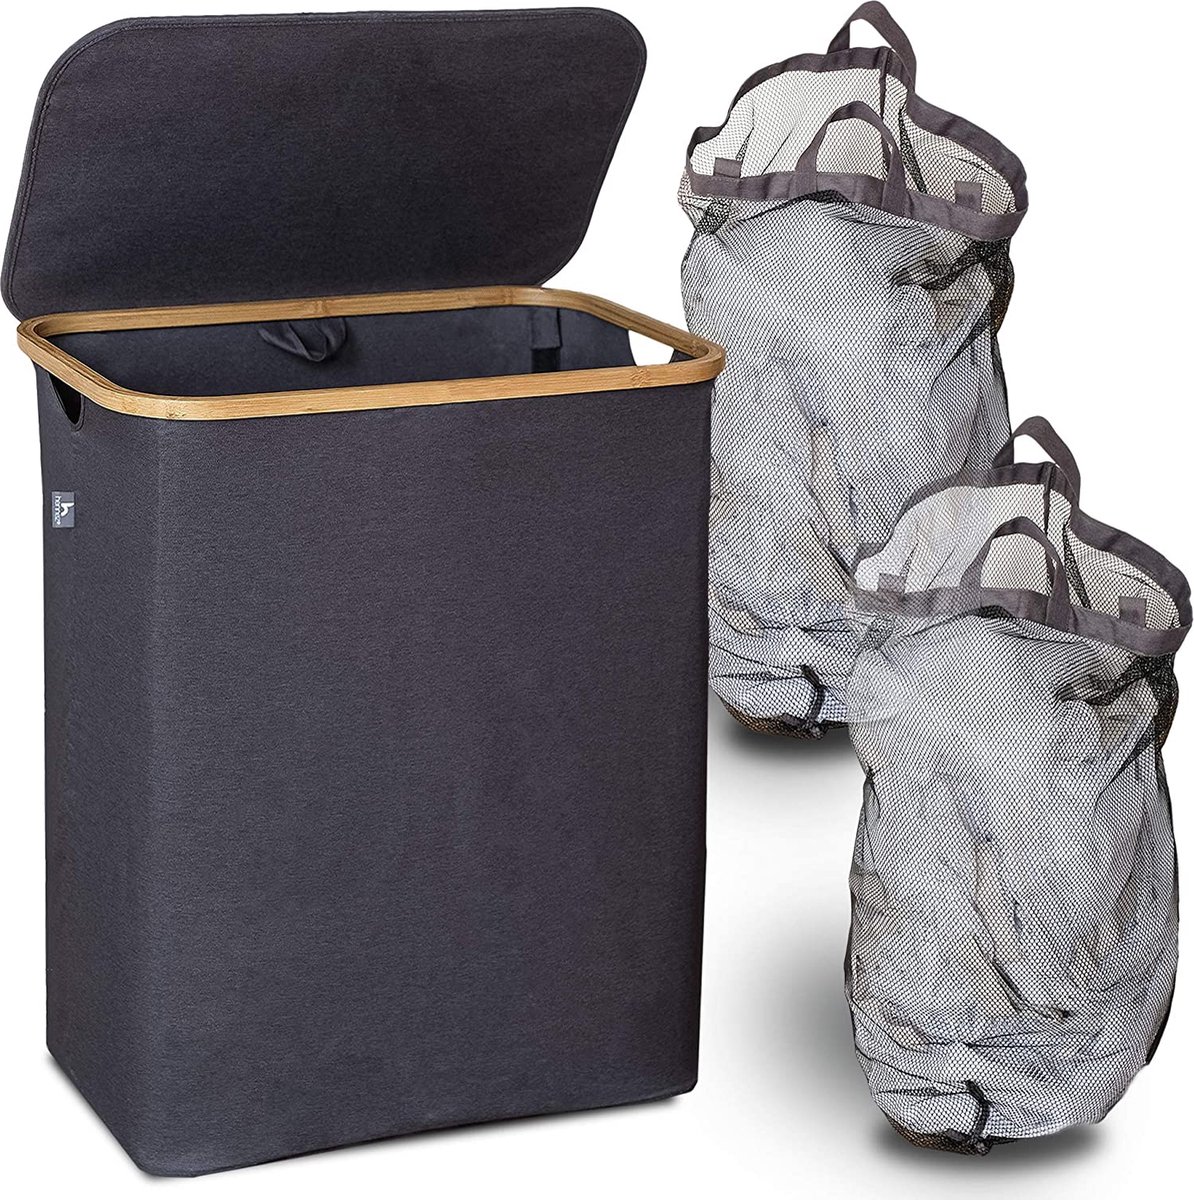 HENNEZ Wasmand 2 vakken met deksel - van 140L opvouwbaar met scheiding en een bamboe frame - wassorteerder inclusief waszak - laundry basket - wasmanden - wasbox zwart